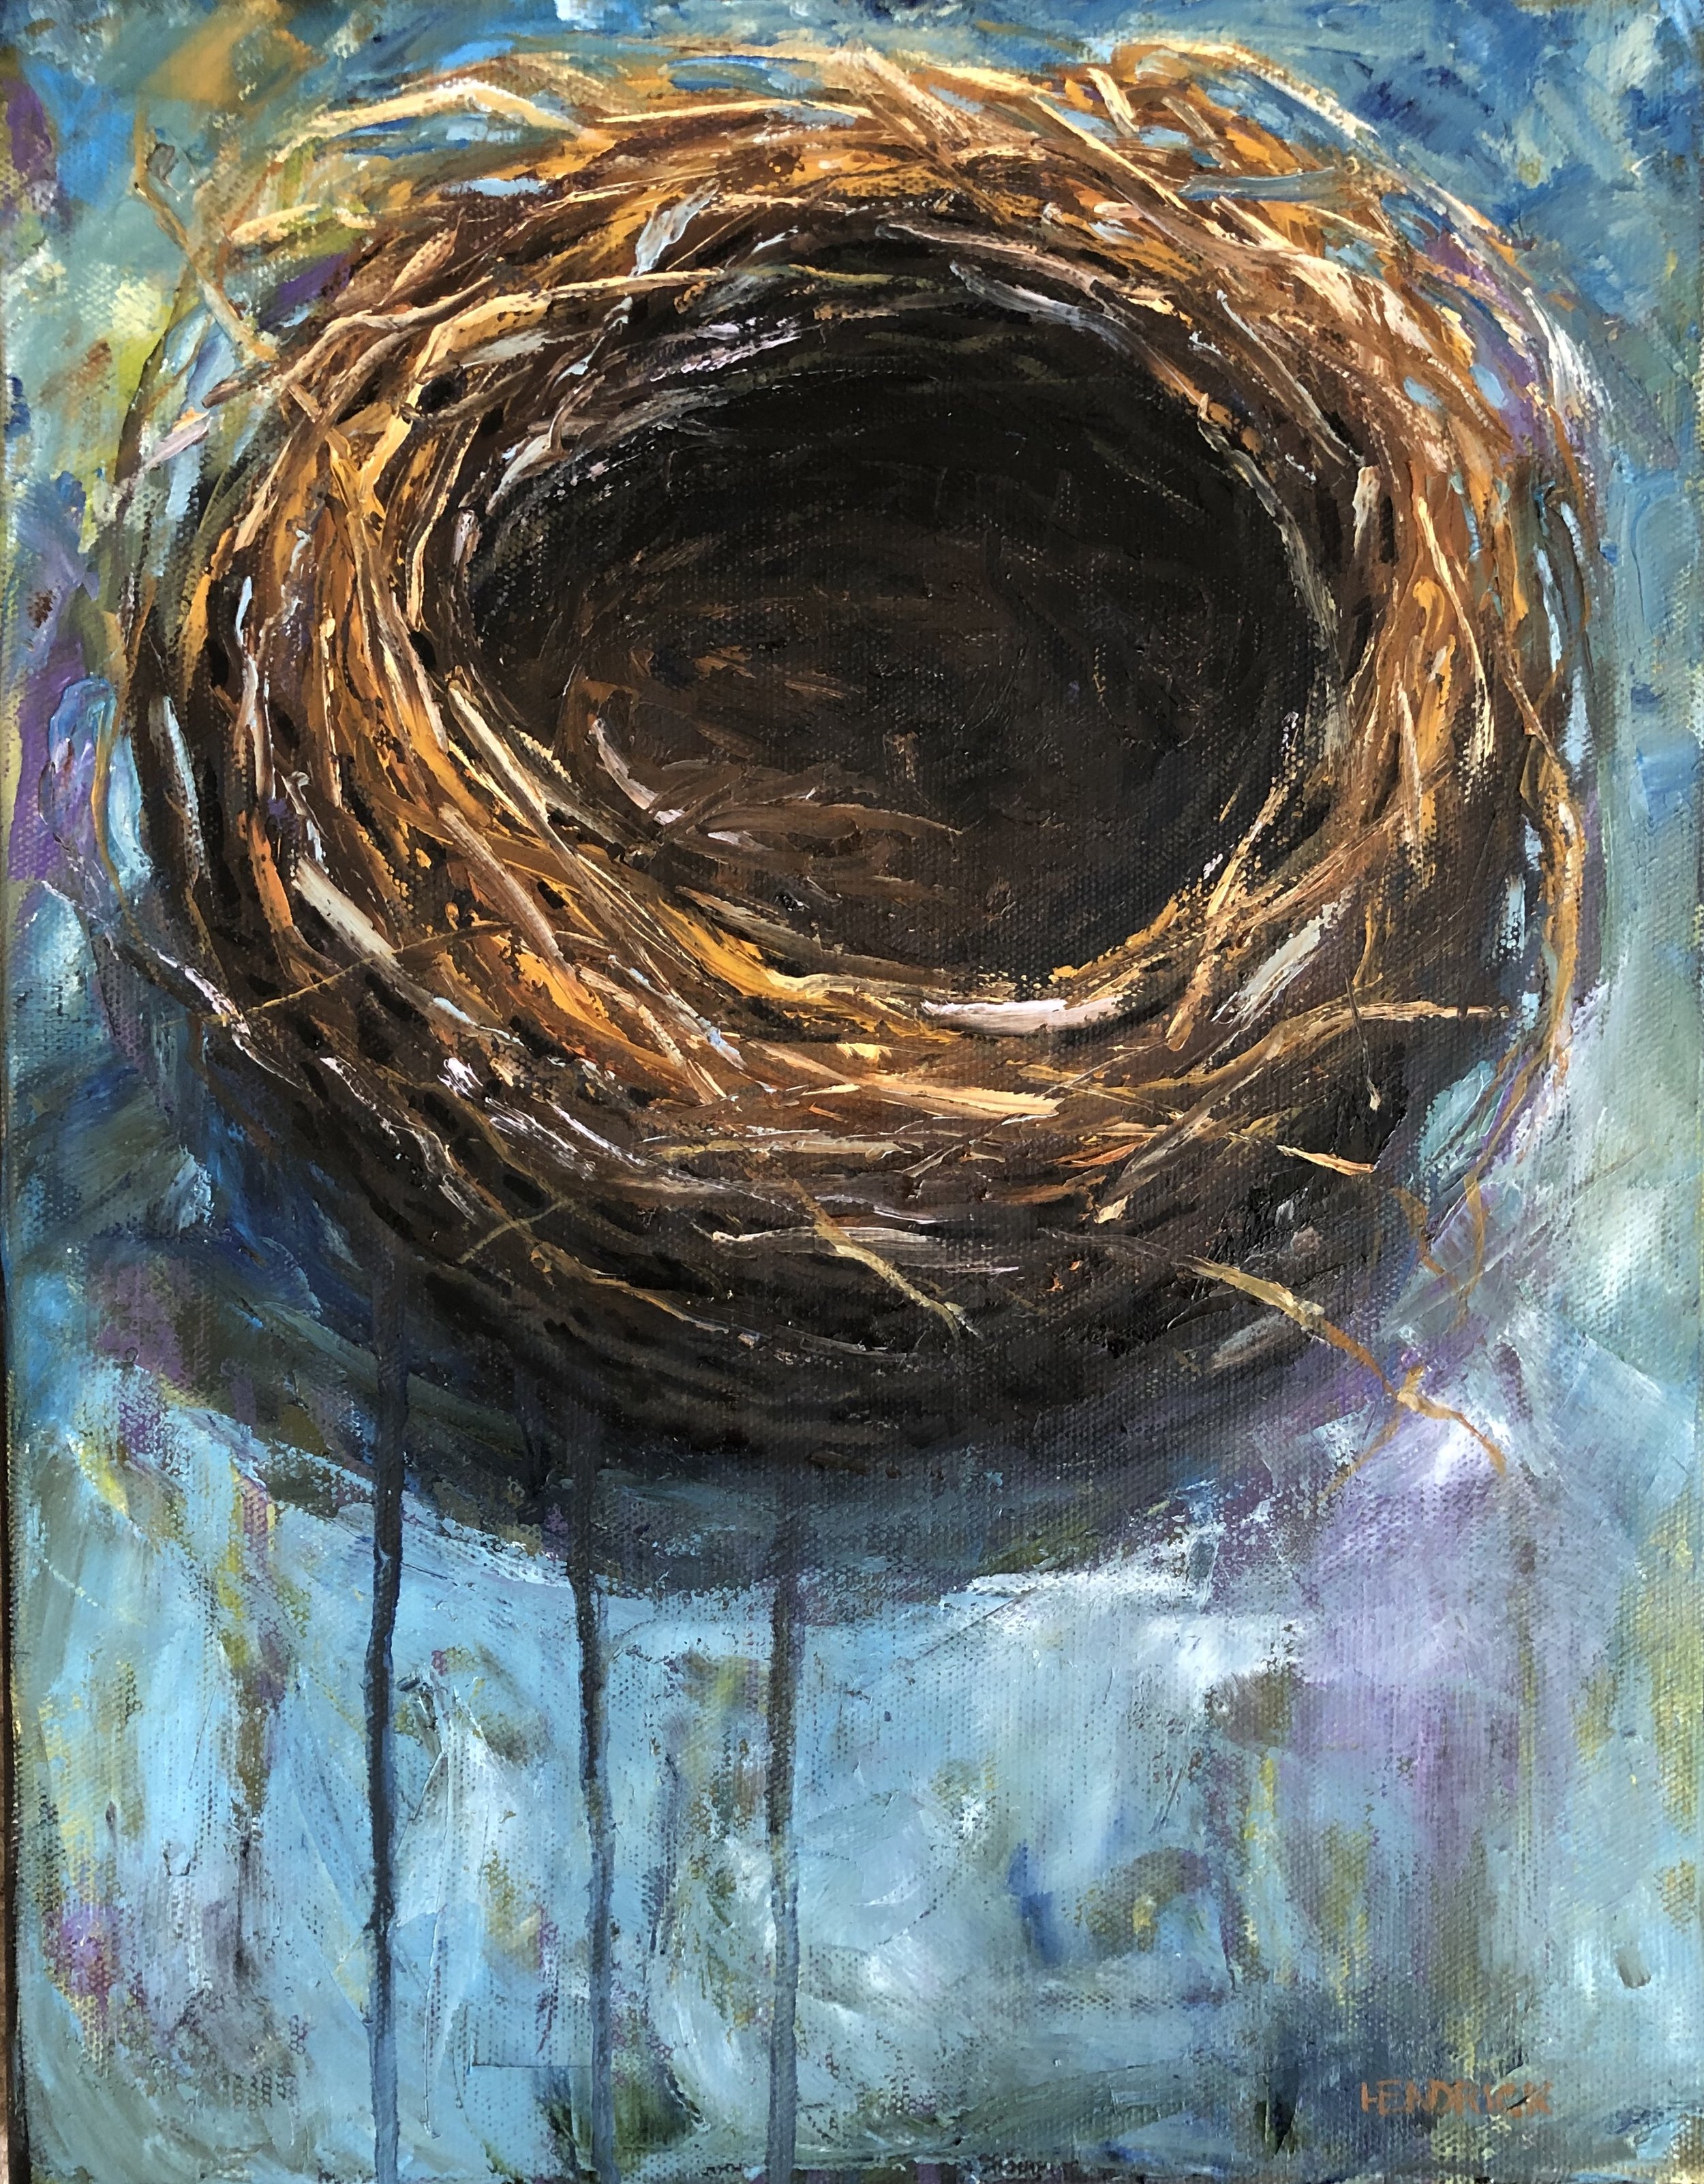 Nest on Blue 11x14, oil